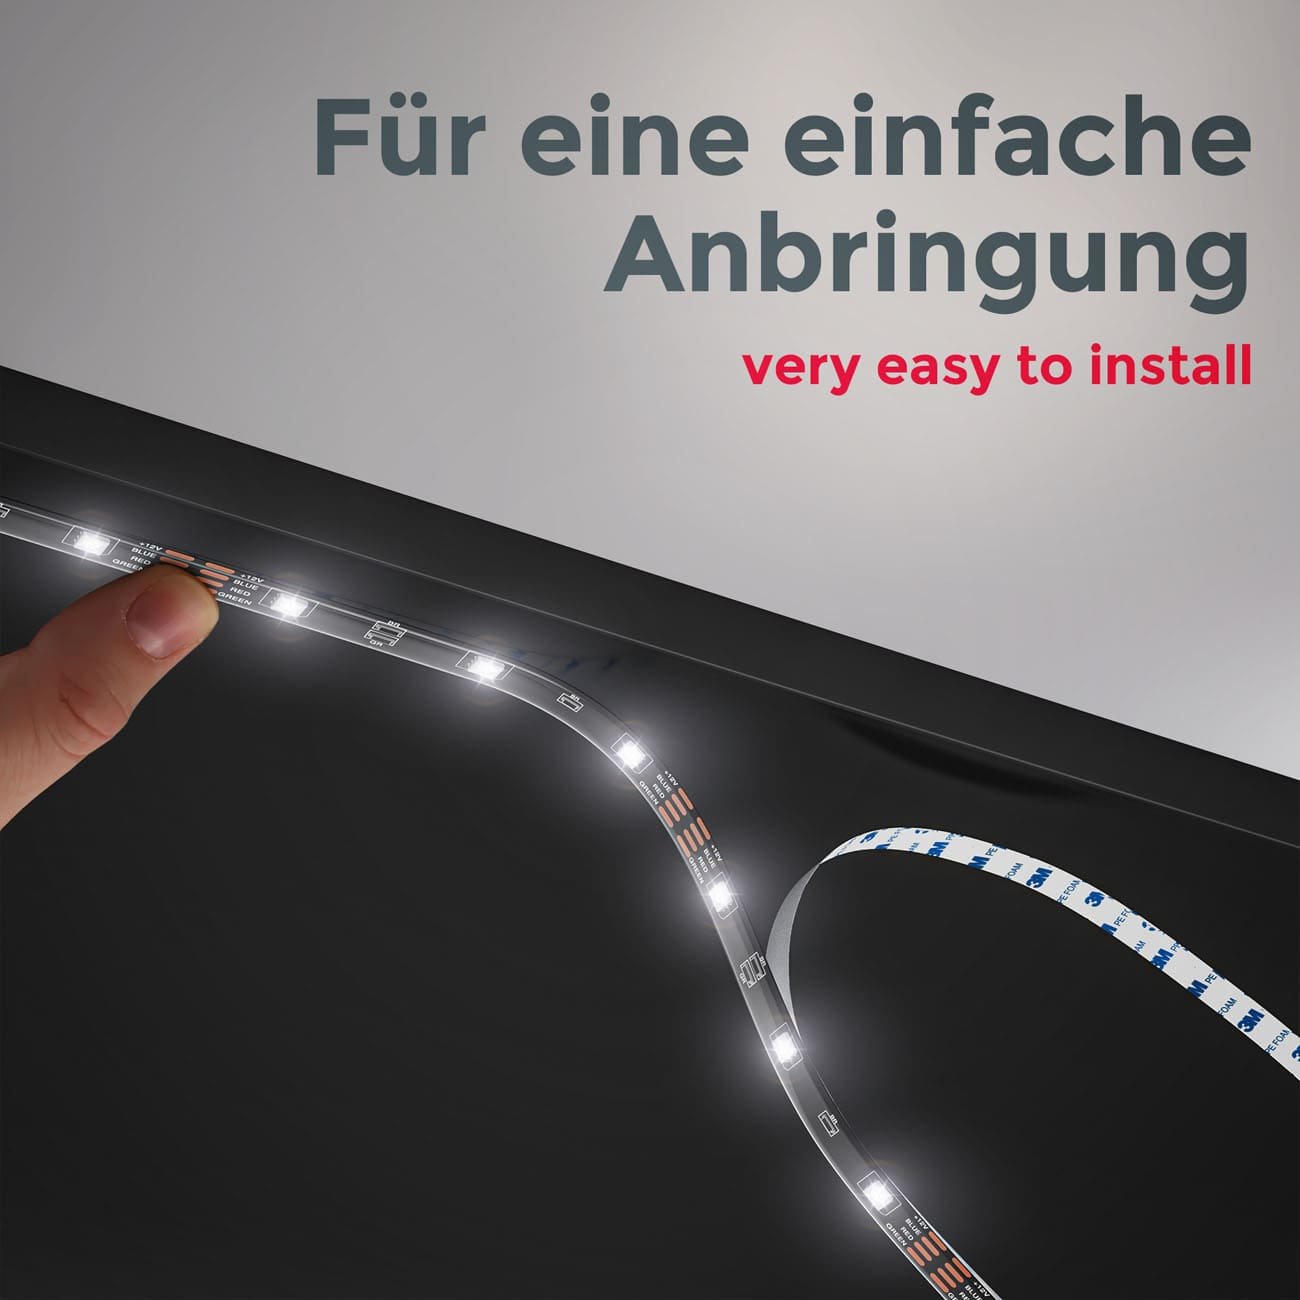 Smartes LED Licht-Band - 2 Meter - RGB Stripe IOS Android dimmbar 9W warmweiß Fernbedienung 60 LEDs flexibel kürzbar selbstklebend USB 5V | schwarz - 6